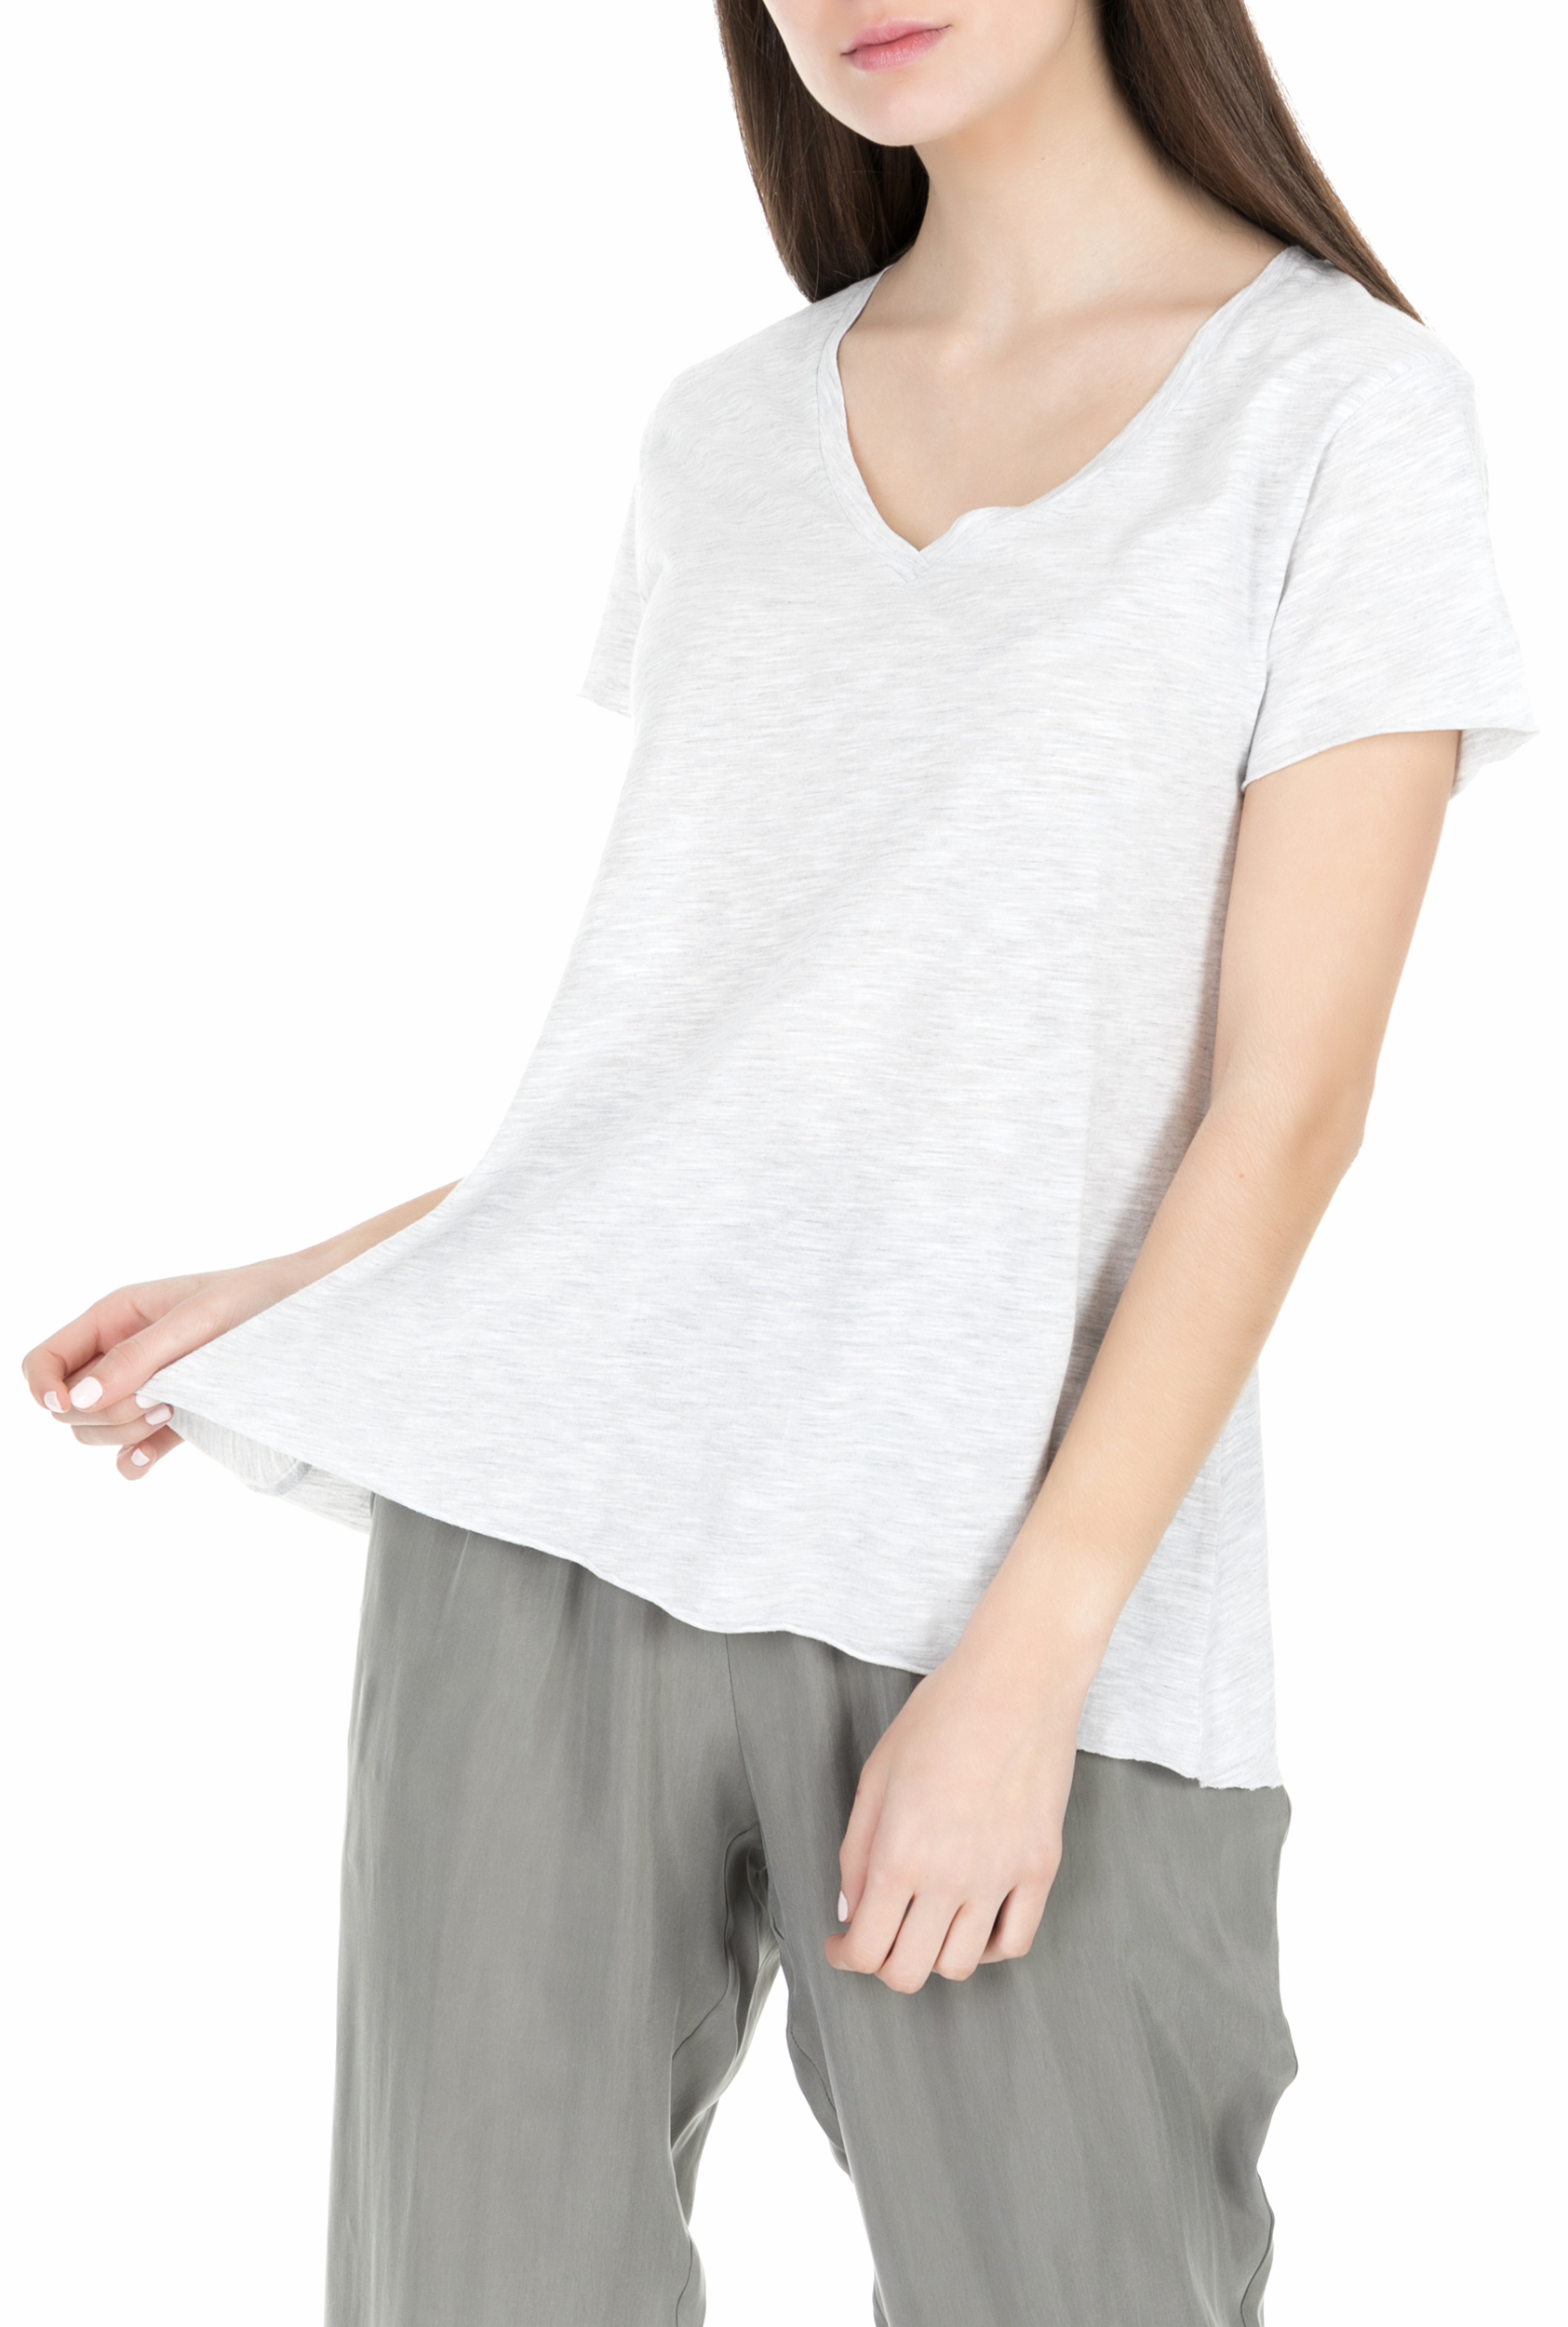 Γυναικεία/Ρούχα/Μπλούζες/Κοντομάνικες AMERICAN VINTAGE - Γυναικεία κοντομάνικη μπλούζα JAC51E18 γκρι